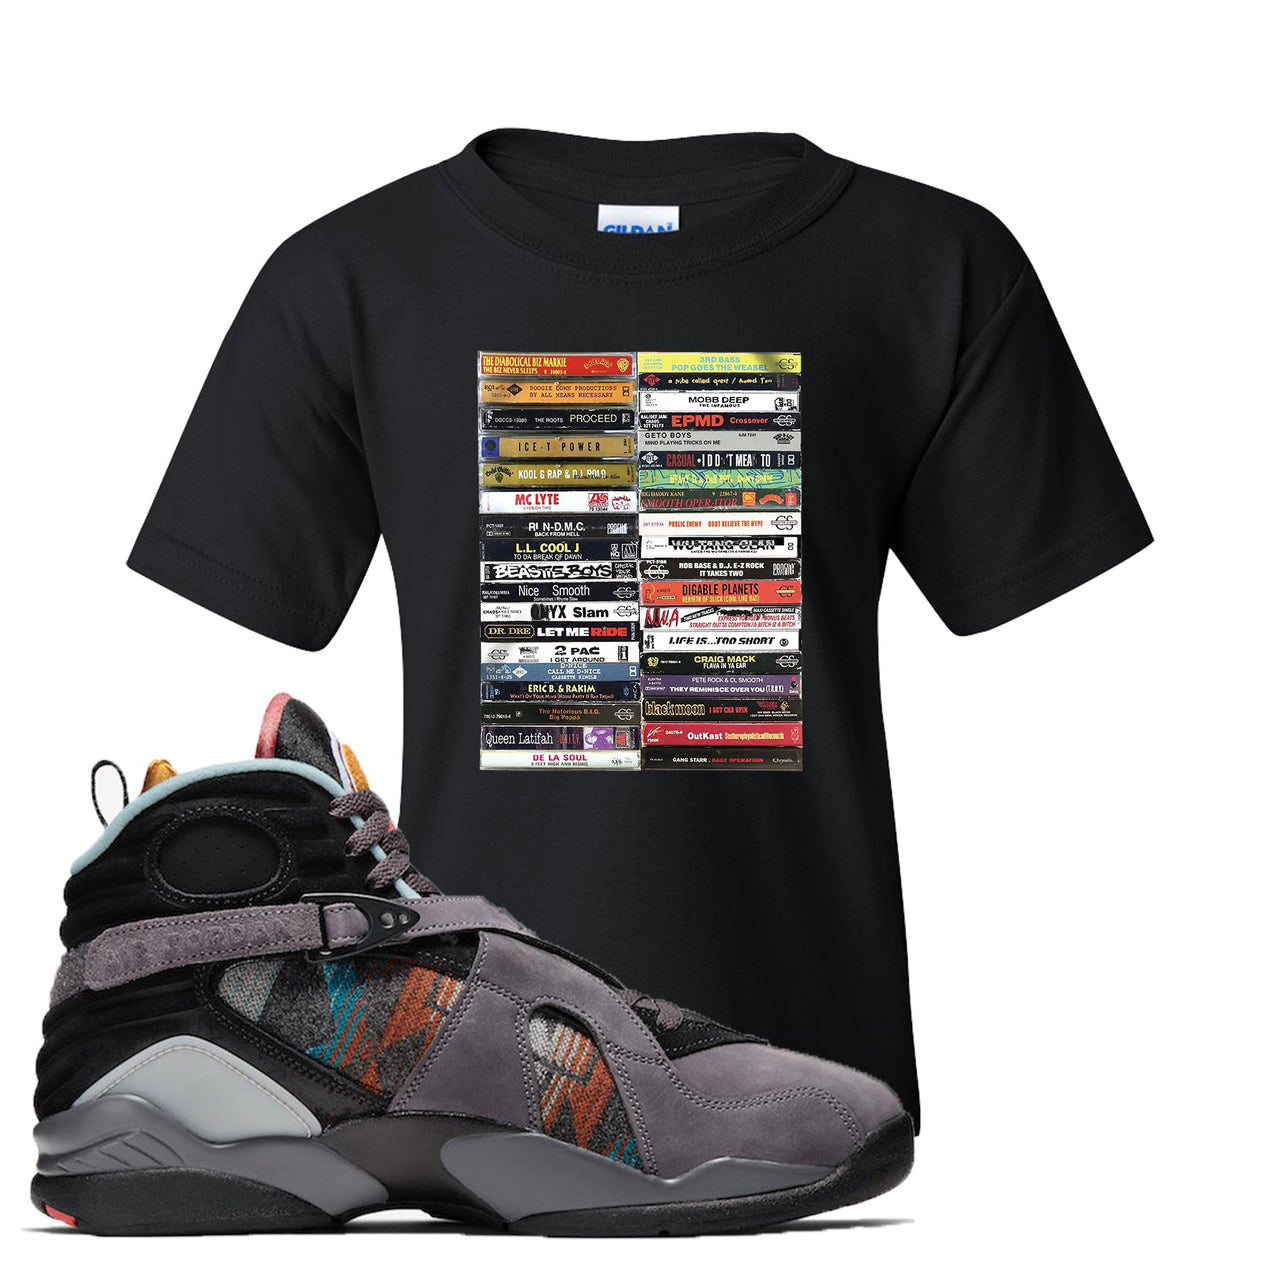 Jordan 8 N7 Pendleton Cassette Black Sneaker Hook Up Kid's T-Shirt